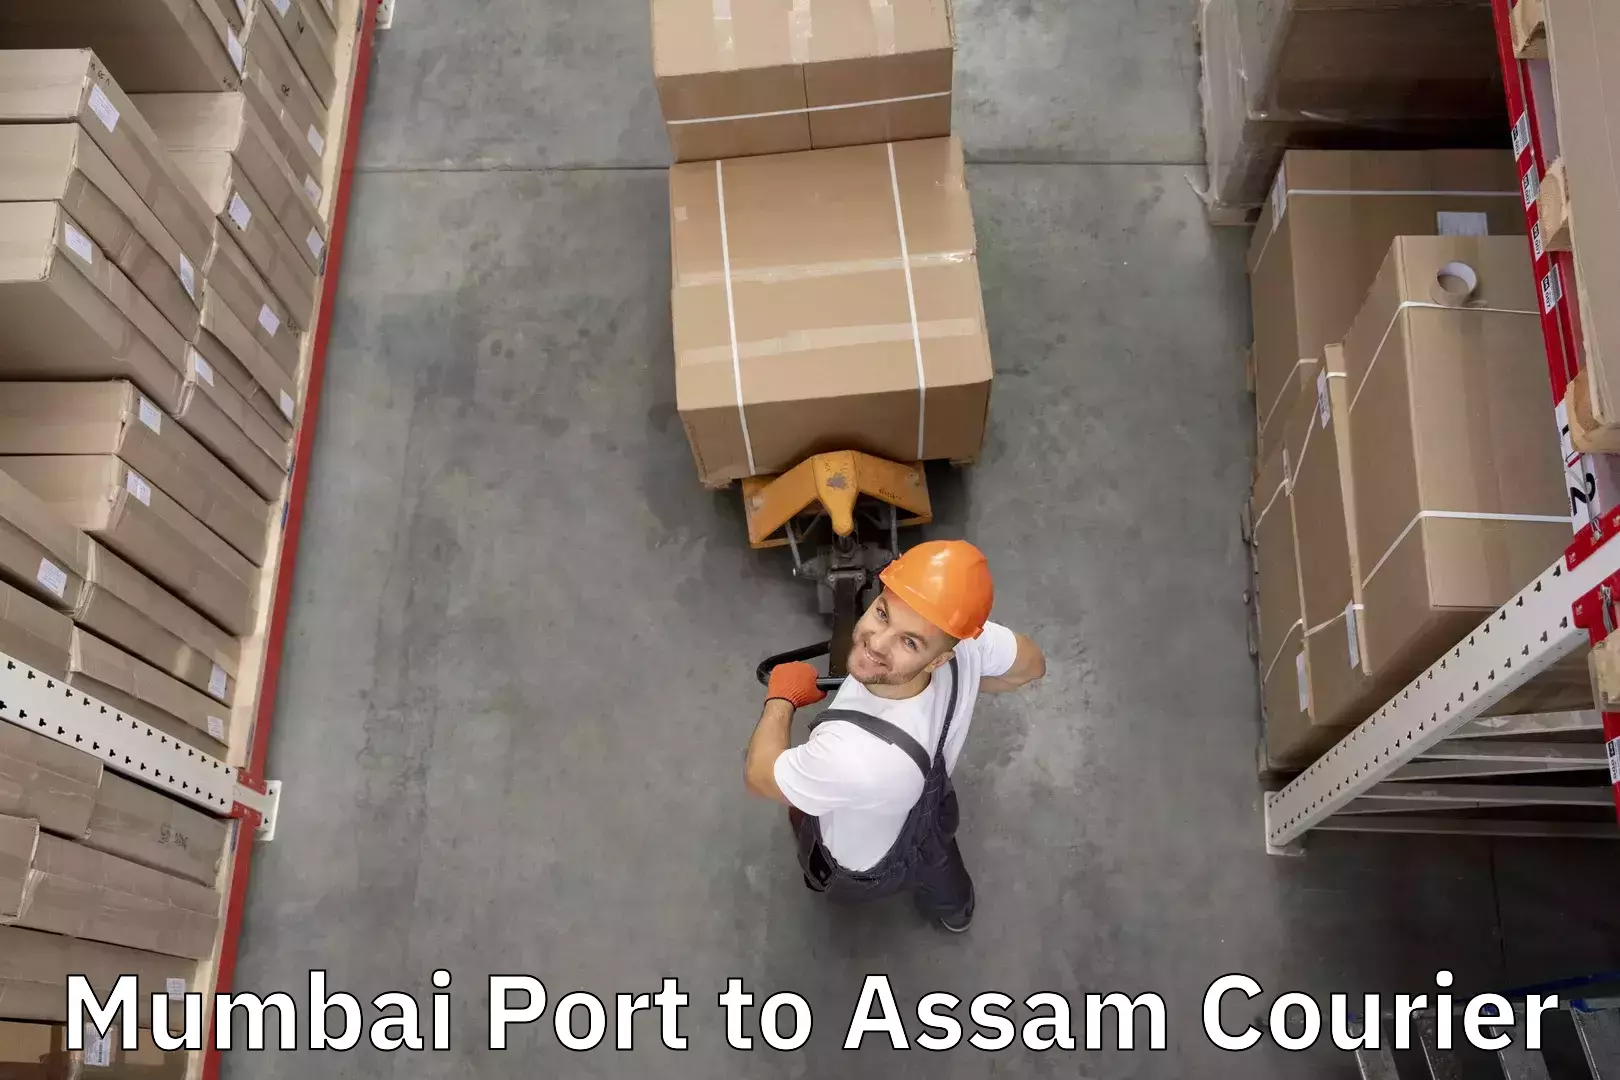 Baggage transport quote Mumbai Port to Assam